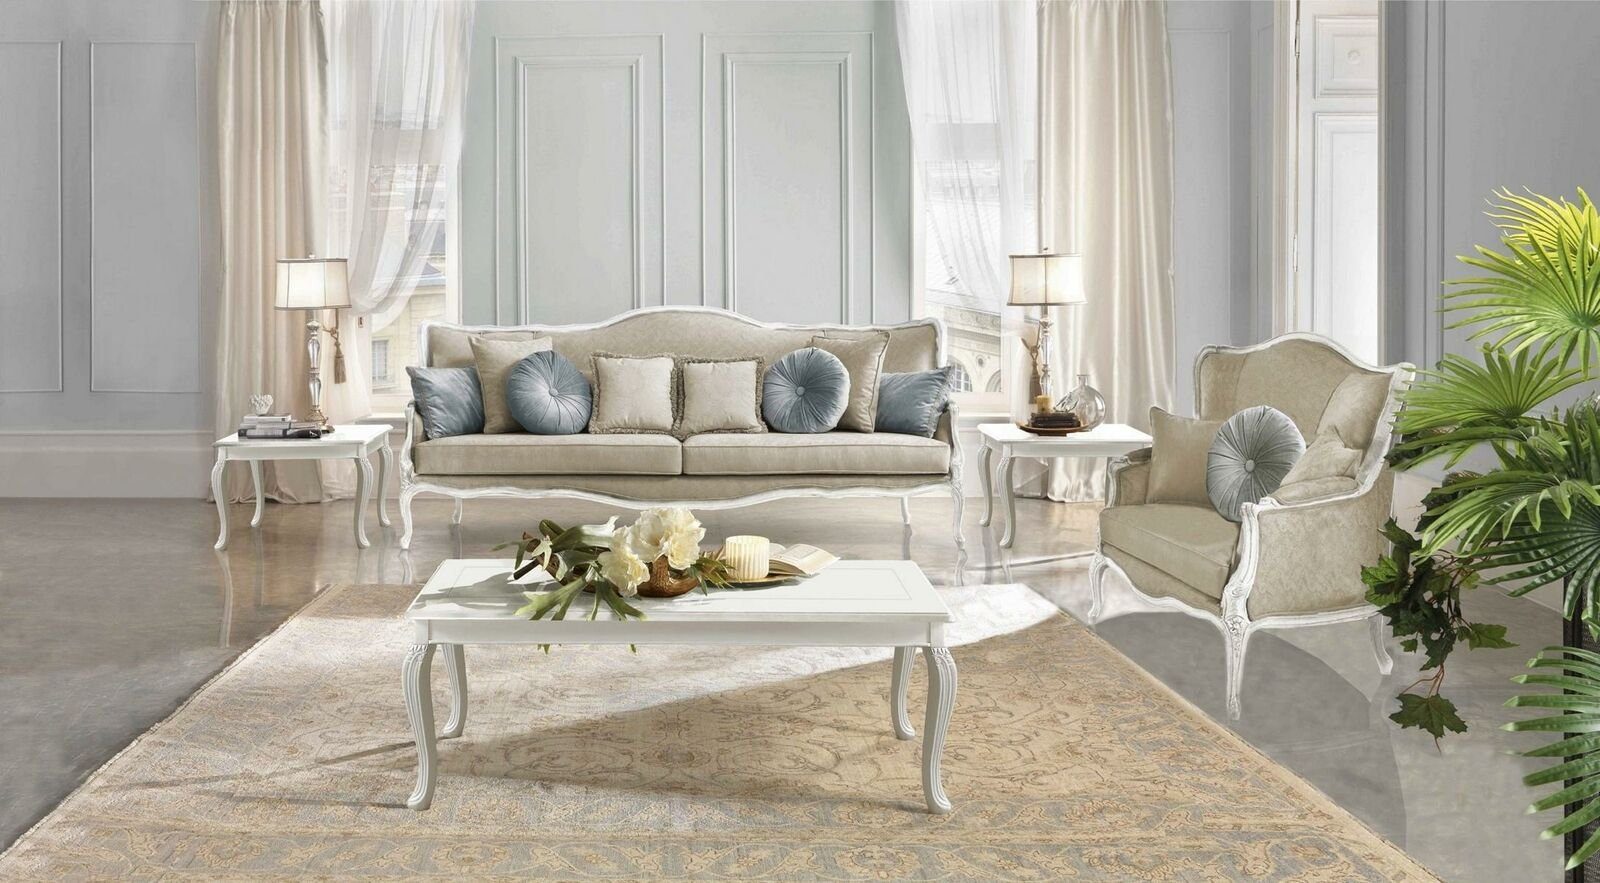 JVmoebel 3 in Europe Stoff, Italienische Klassische Sofa Möbel Rokoko Made Sofa Sitzer Barock Textil